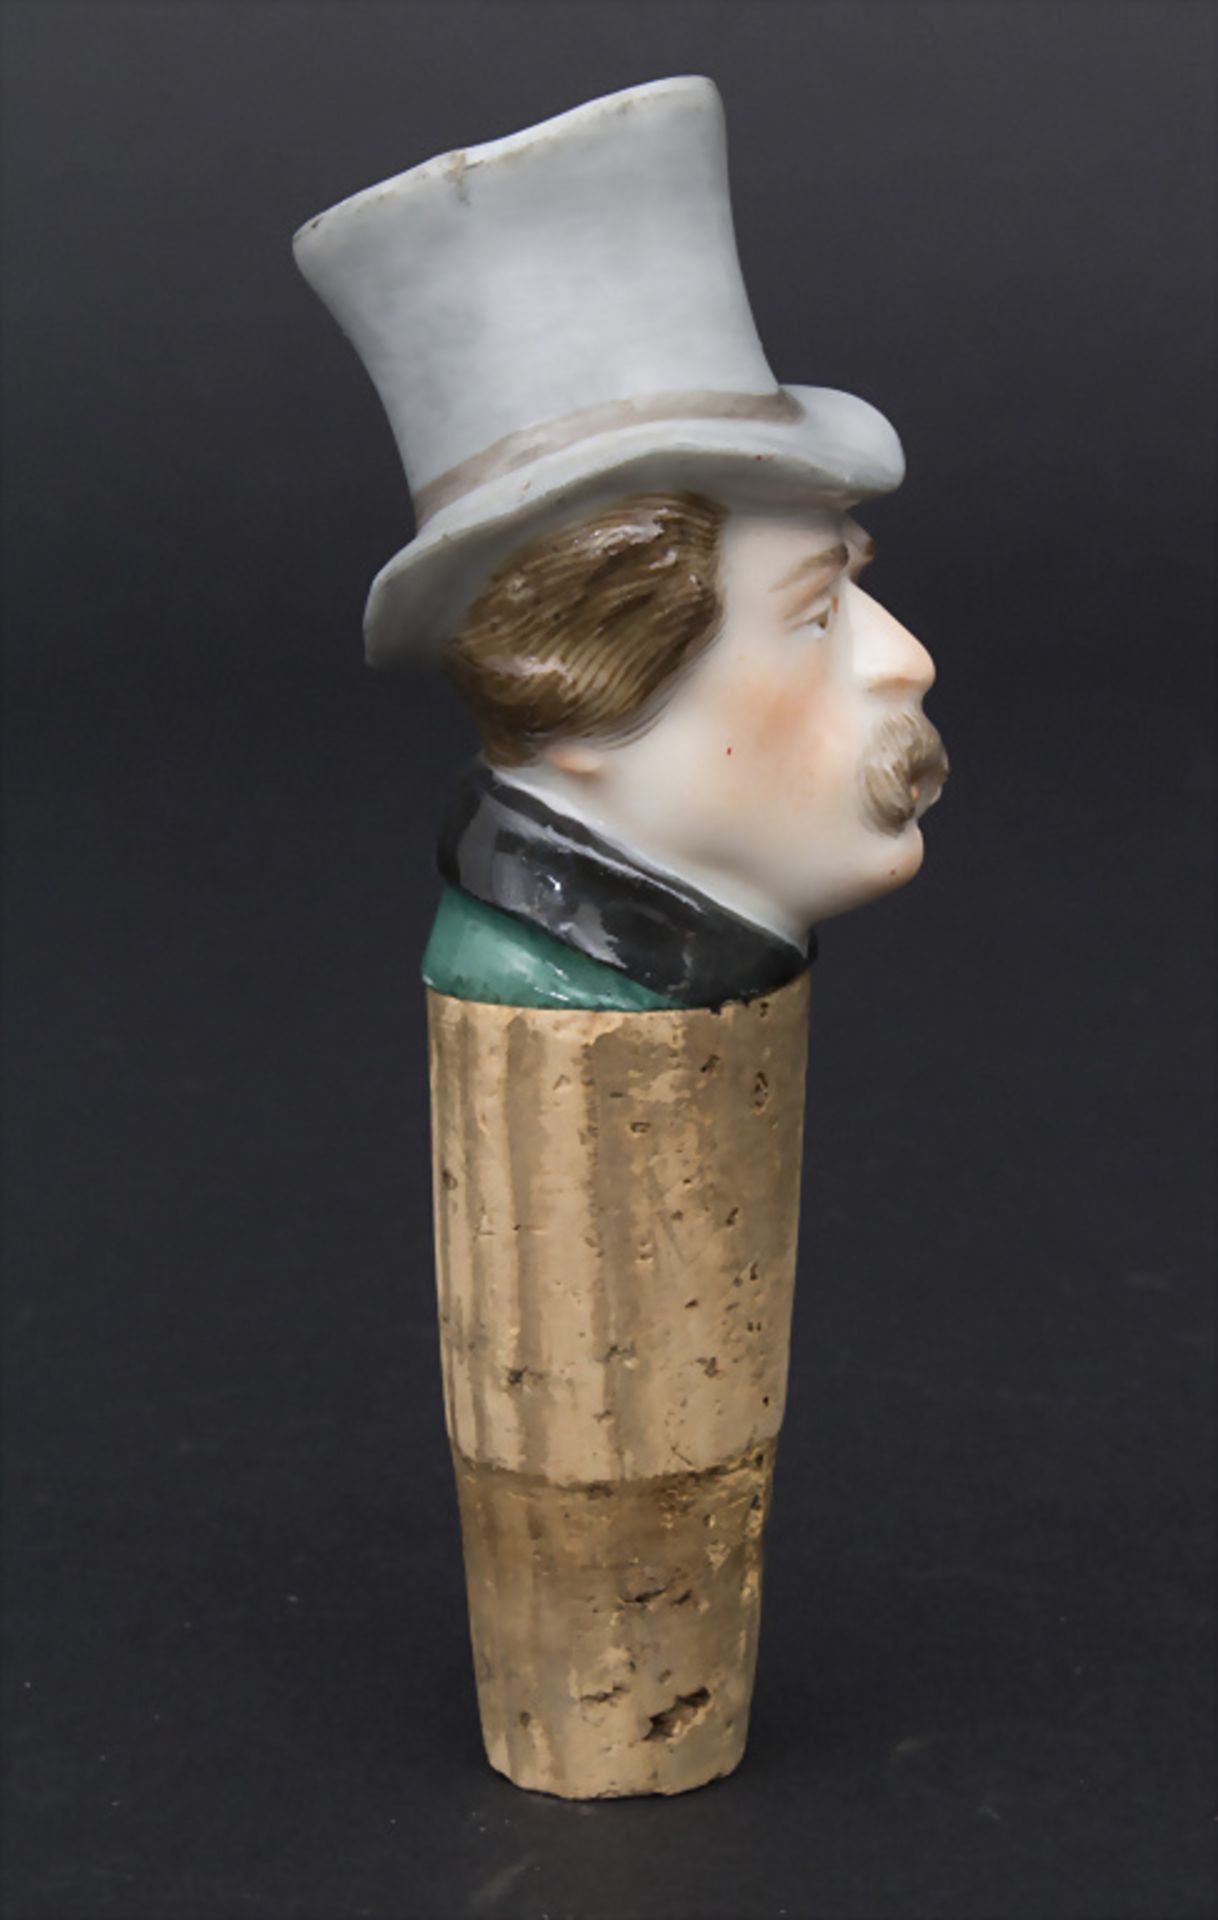 Charakter-Kopf / Flaschenstöpsel / Zierkorken / A head of a gentleman as bottle stopper, ... - Image 2 of 3